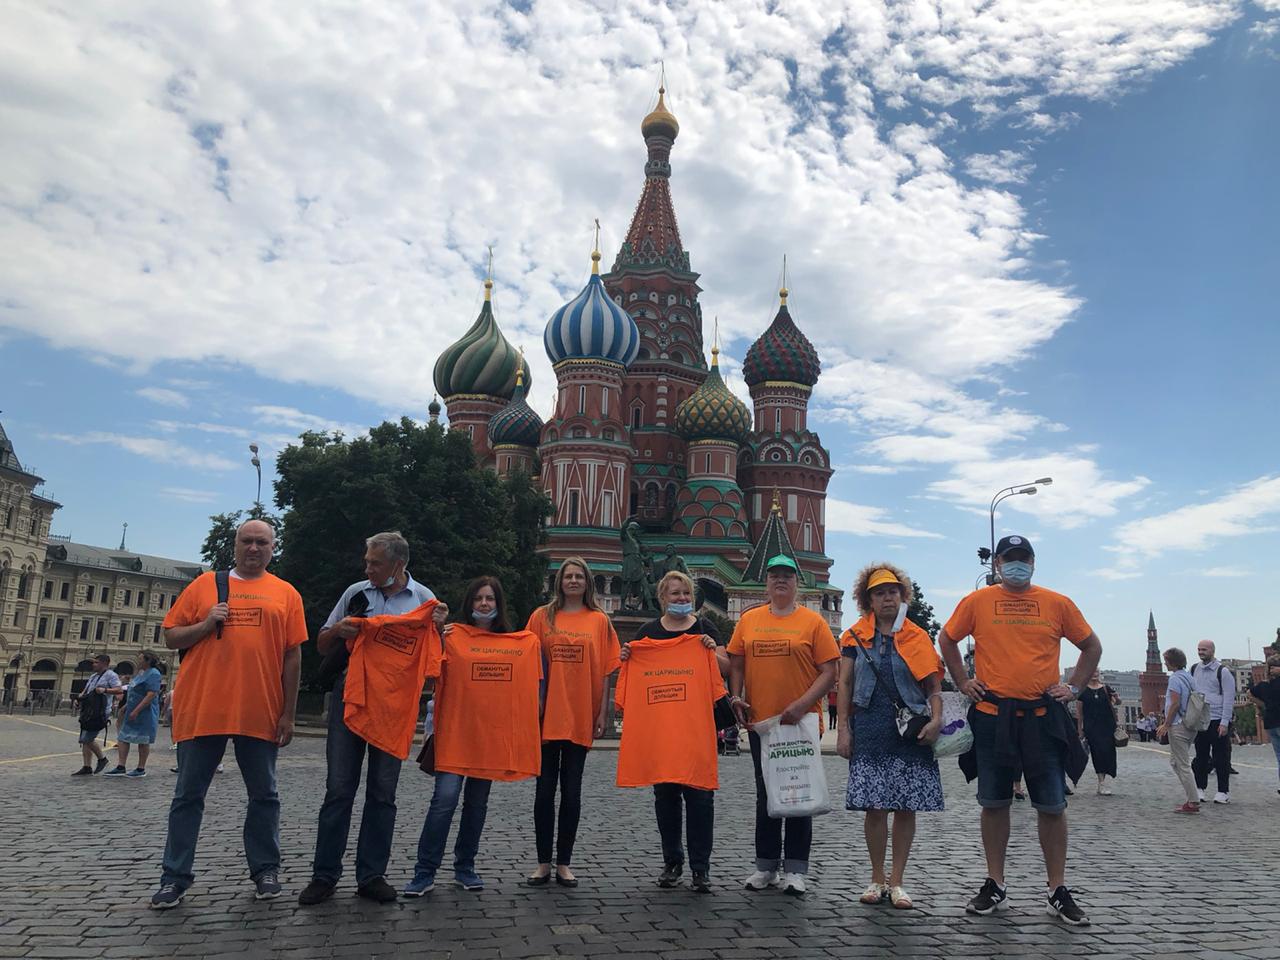 Обманутые дольщики ЖК «Царицыно» устроили акцию на Красной площади. Фото из сообщества дольщиков в VK.